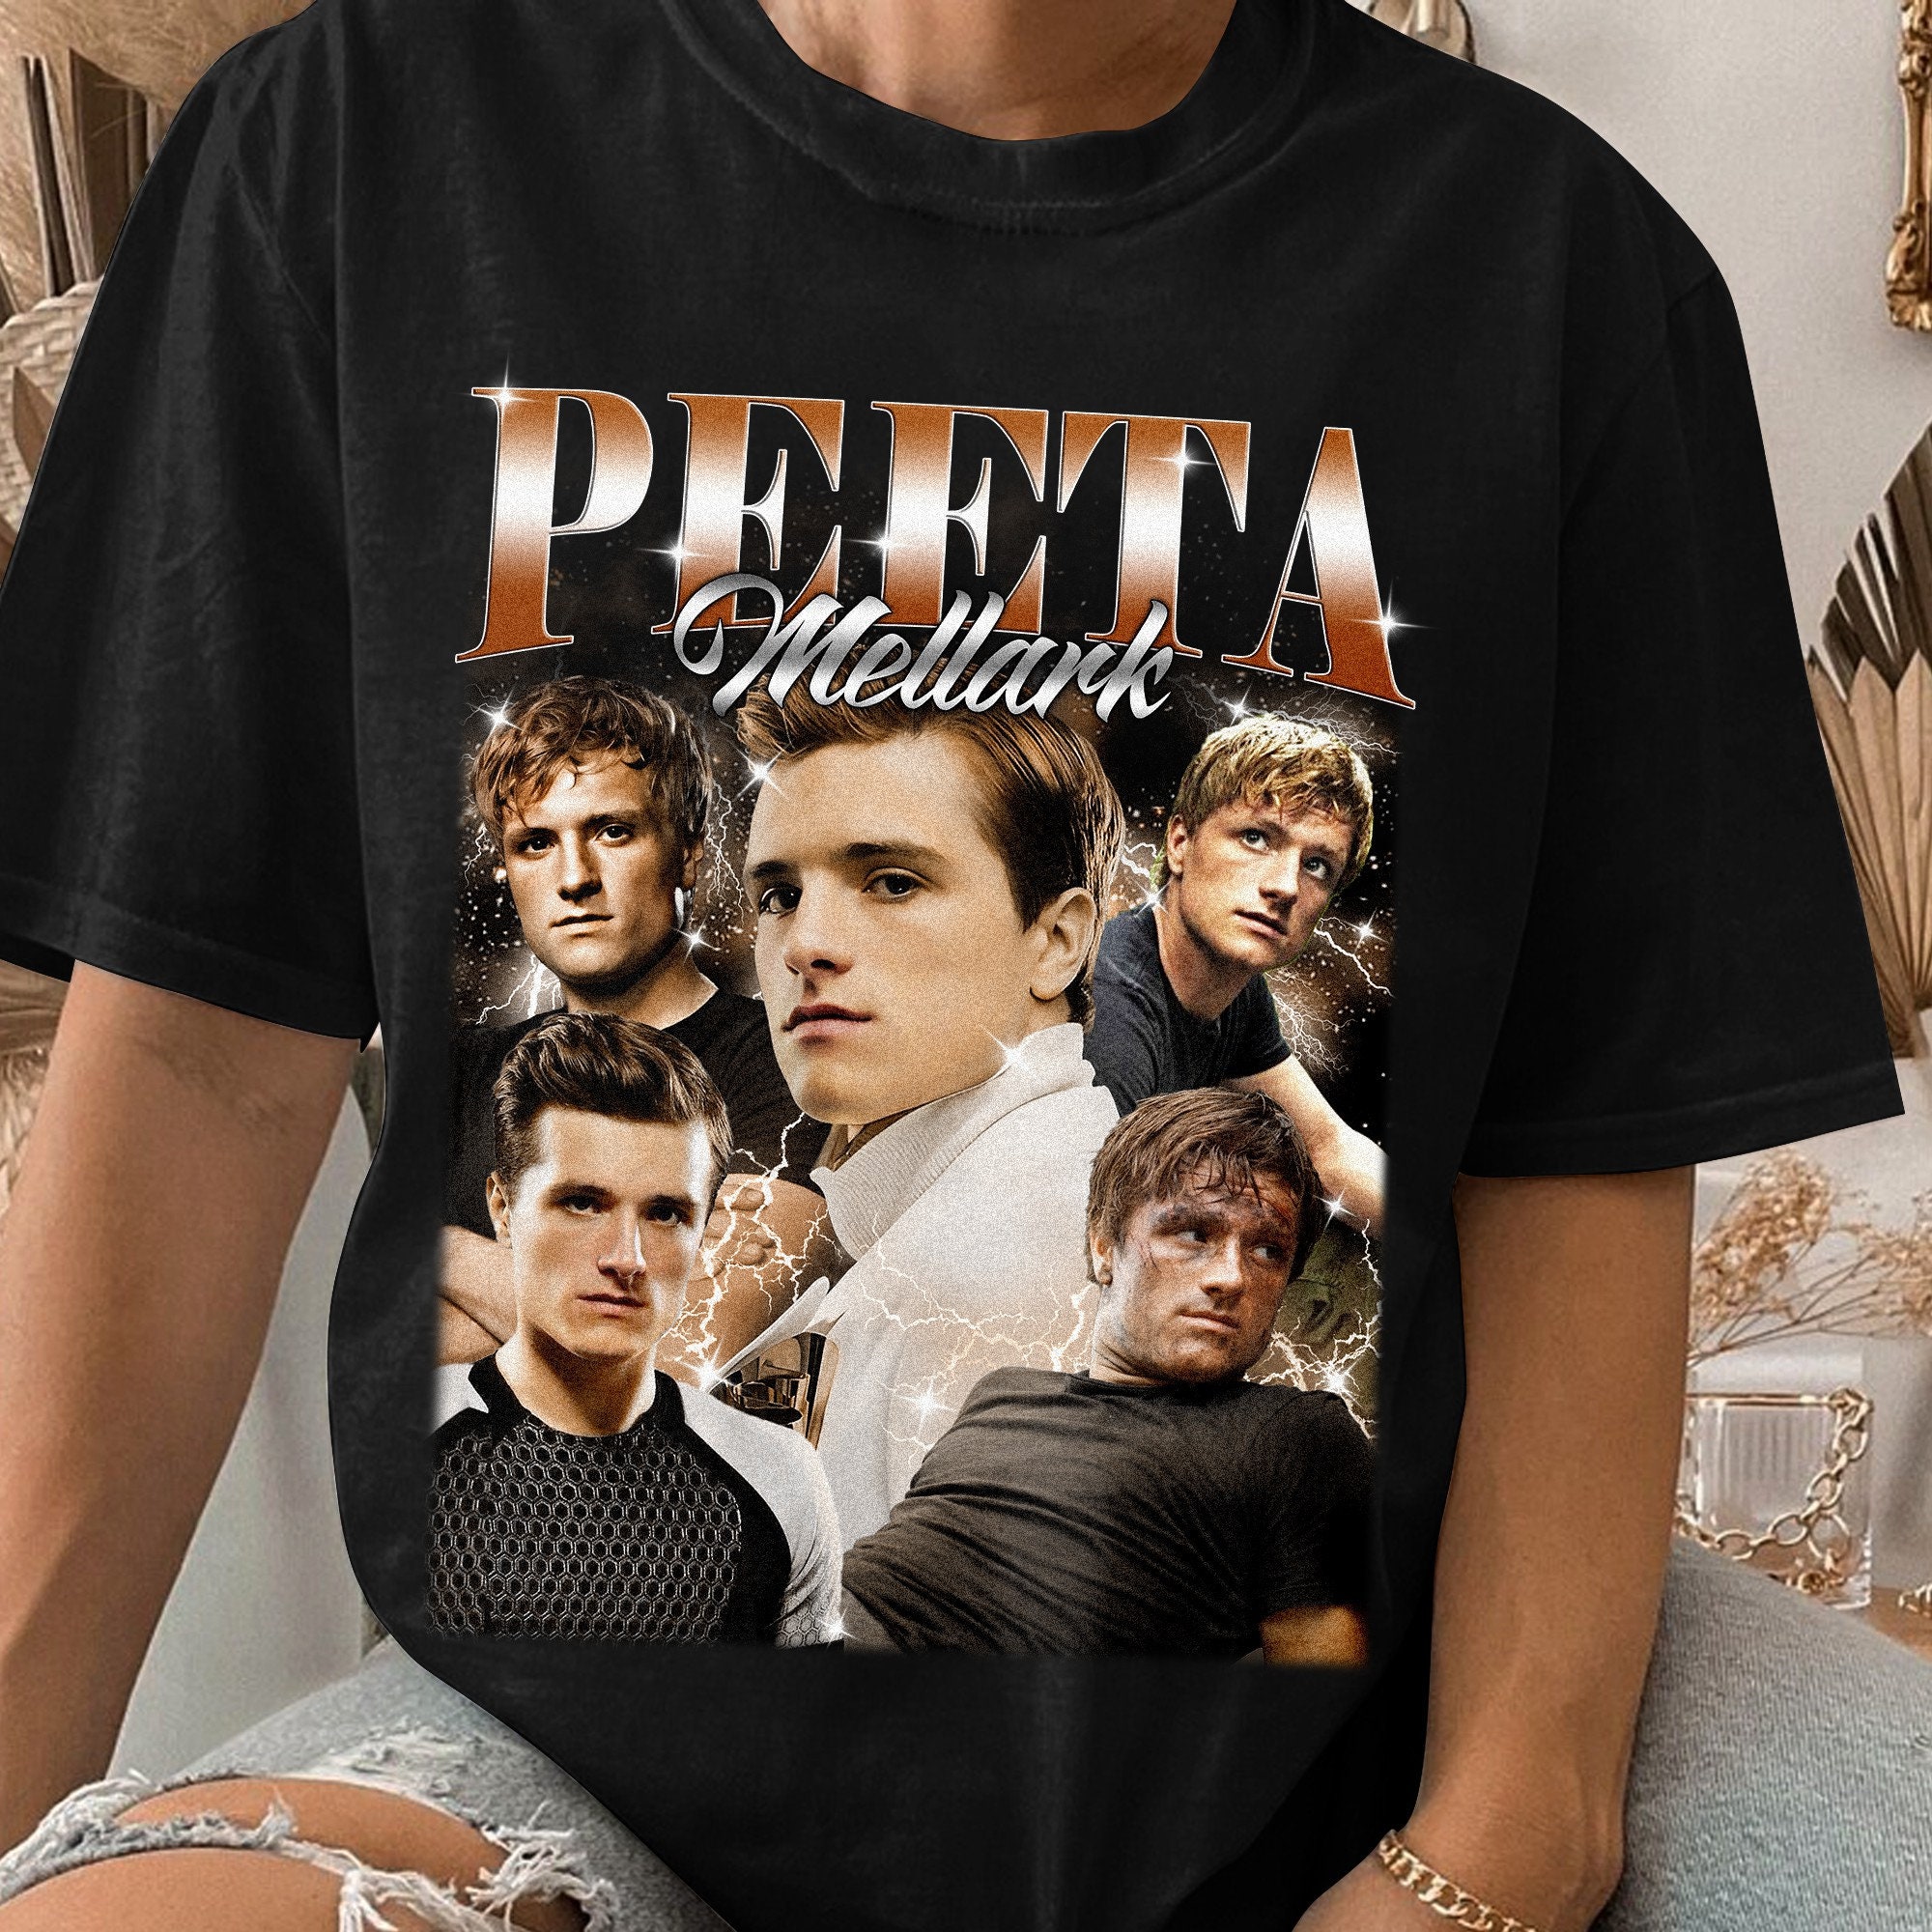 Peeta Mellark Vintage Unisex Shirt Limited Peeta Mellark Vintage T-shirt,  Gift Unisex T-shirt, Best Peeta Mellark Unisex T-shirt Sweatshirt 